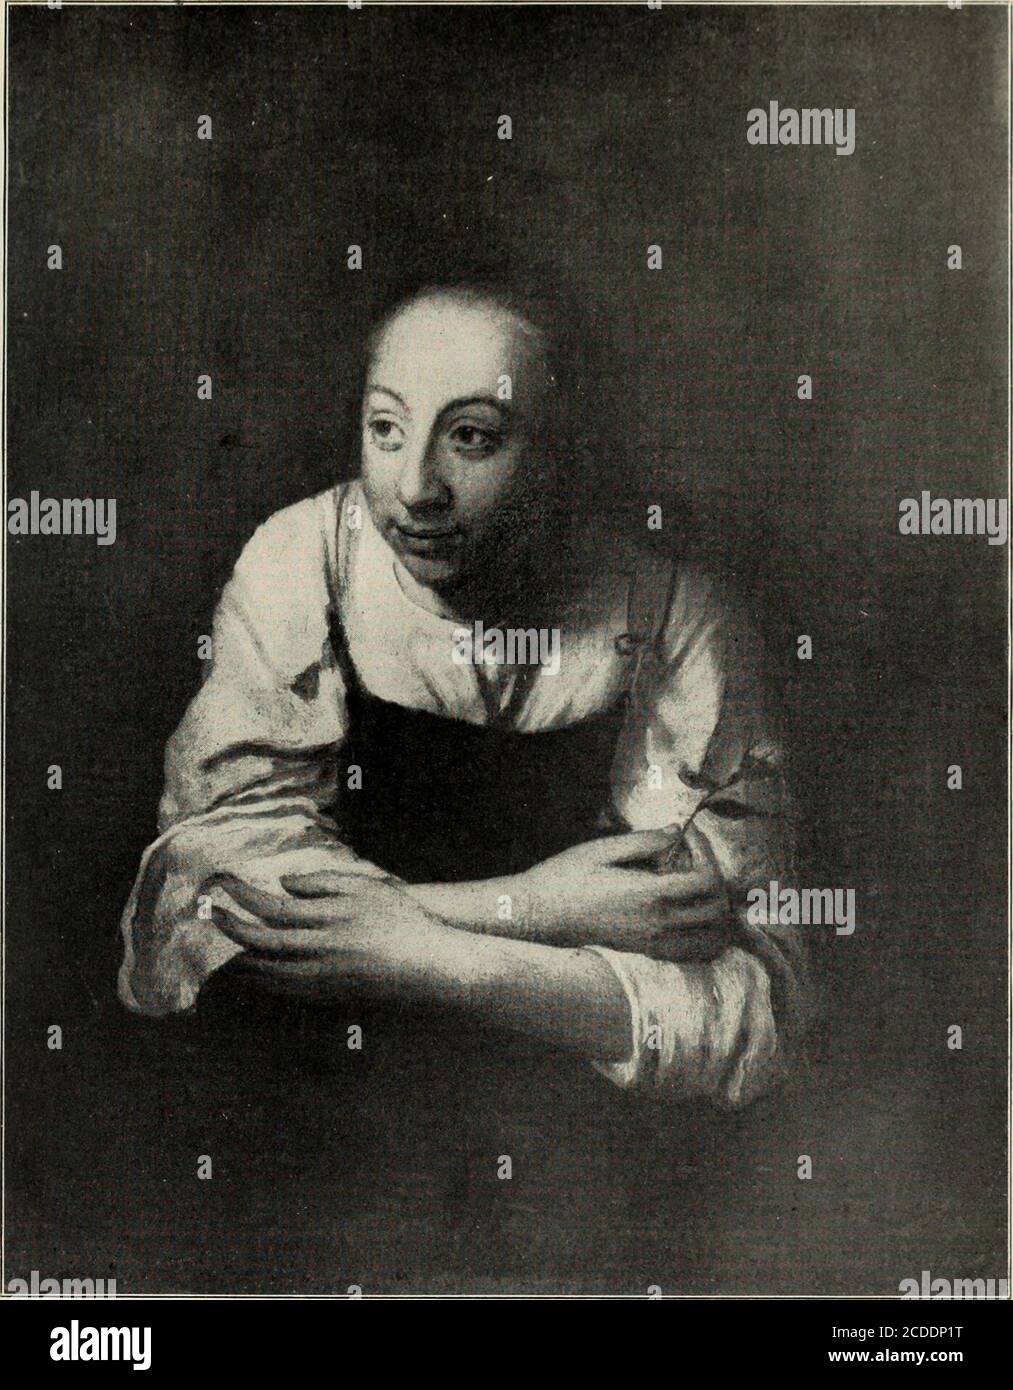 . Rembrandt; des meisters gemälde in 643 abbildungen . Jerlln, Leopold Koppel Auf Leinwand, H. 1,12, B. 0,S7 Bildnis eines jungen MannesPortrait of a young man 1663 (?) Portrait dun jeune homme 503 ^^^H ^tr -v ^jB^S «tt..-,r. *-^yjfl ?i2J^P*% *J3 ^^^HK : ?^?^^^iüB -^-.^H ^^M(tÄT;^&gt;,   , j fl|^toj^B ? ? ä Berlin, Marcus Kappel Aul Holz, H. 0,24, B. 0,19 StudienkopfStudy-head Um 1663 Tete detude 504. Petworth, Lord Leconfield Köchin am FensterA cookmaid at the window Um 1664 B. 514 Auf Leinwand, H. 0,S3, B. 0,65 Cuisiniere ä la fenetre 505 Stock Photo